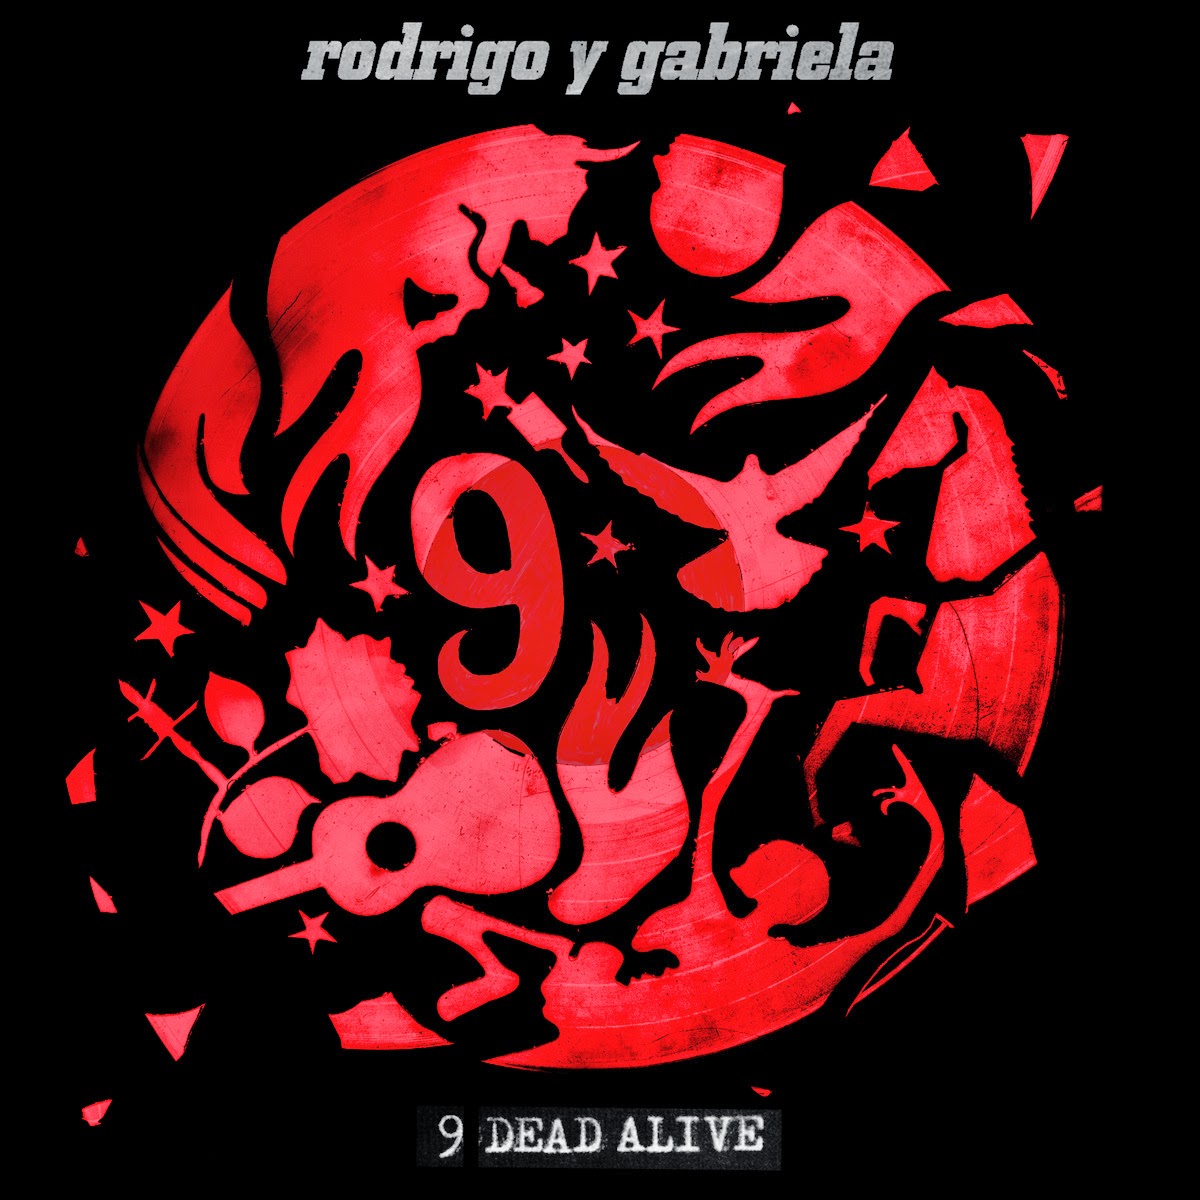 RODRIGO Y GABRIELA - 9 Dead Alive cover 